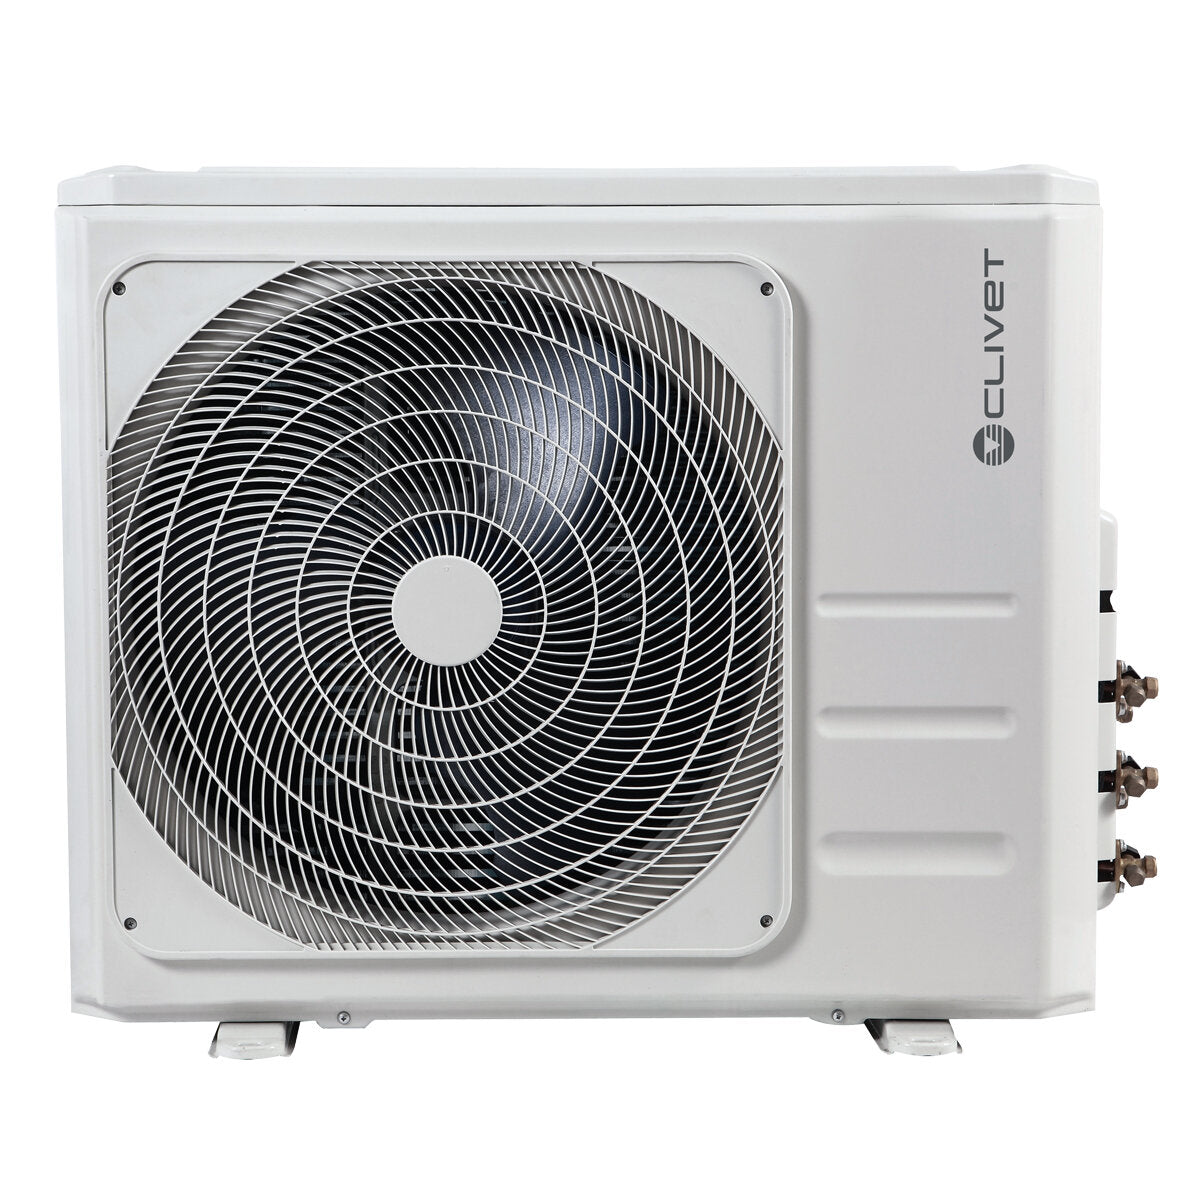 Air conditioner Clivet Essential 2 penta split 9000 + 9000 + 9000 + 9000 + 9000 BTU inverter A ++ outdoor unit 12.3 kW